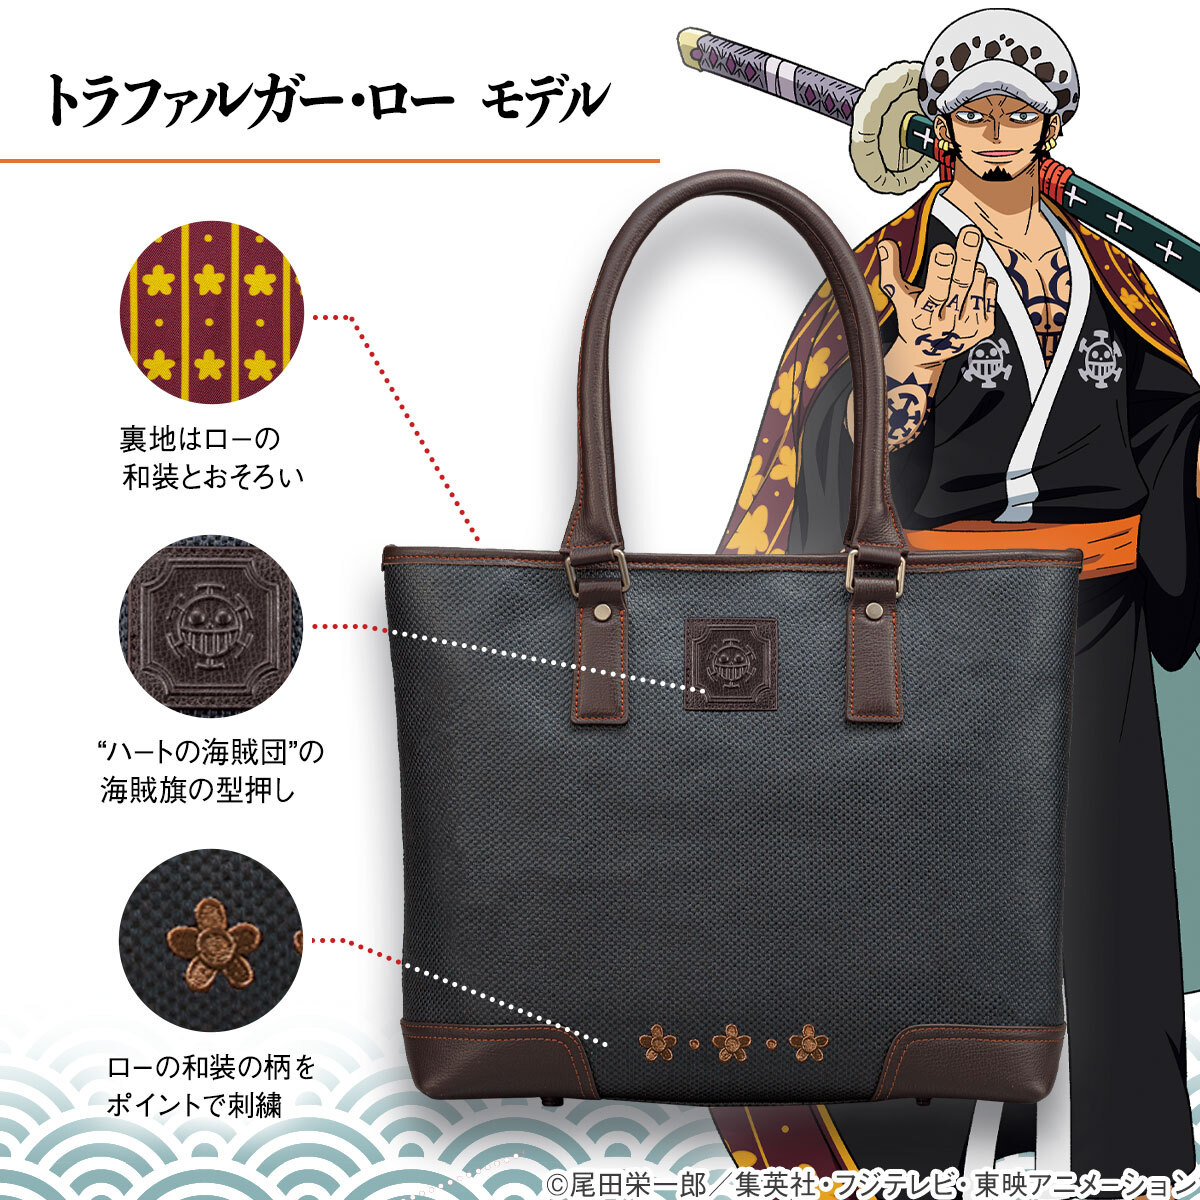 日本最古の帆布 松右衛門帆 と One Piece が和の共演 ワノ国編のルフィとローをイメージした2種類のトートバッグが登場 インペリアル エンタープライズ株式会社のプレスリリース